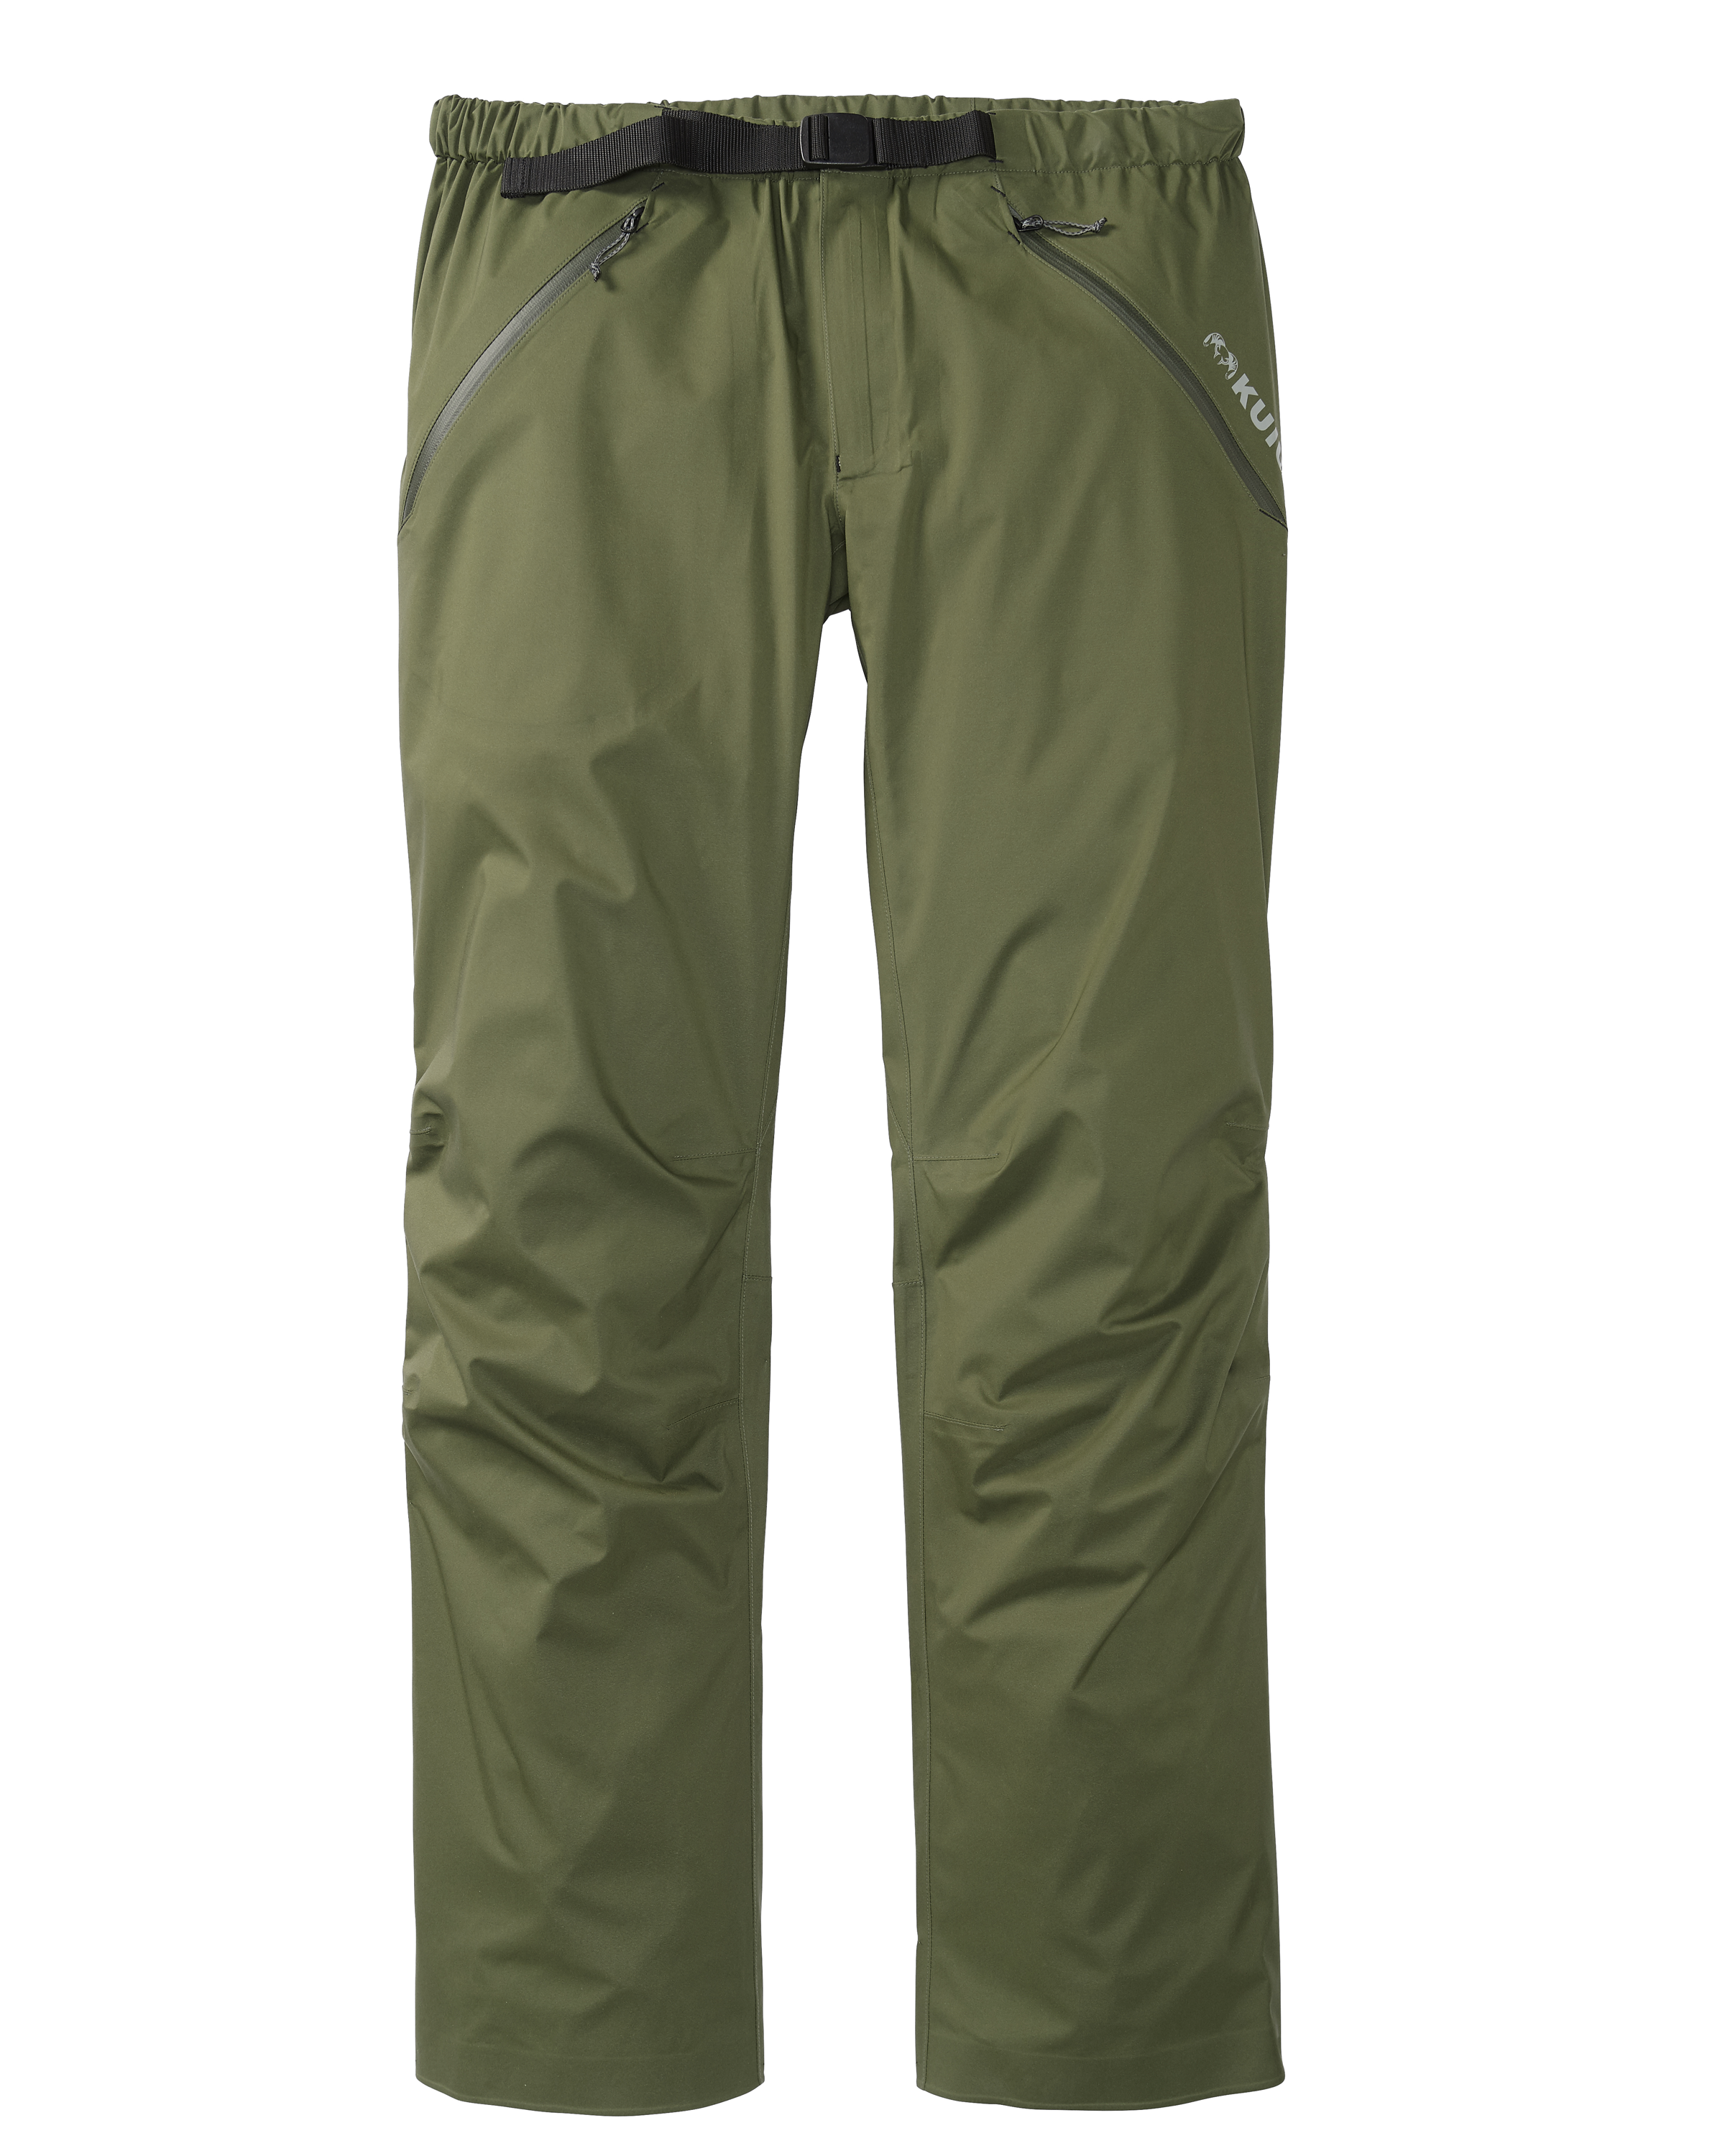 KUIU Northridge Rain Hunting Pant in Olive | Size XL